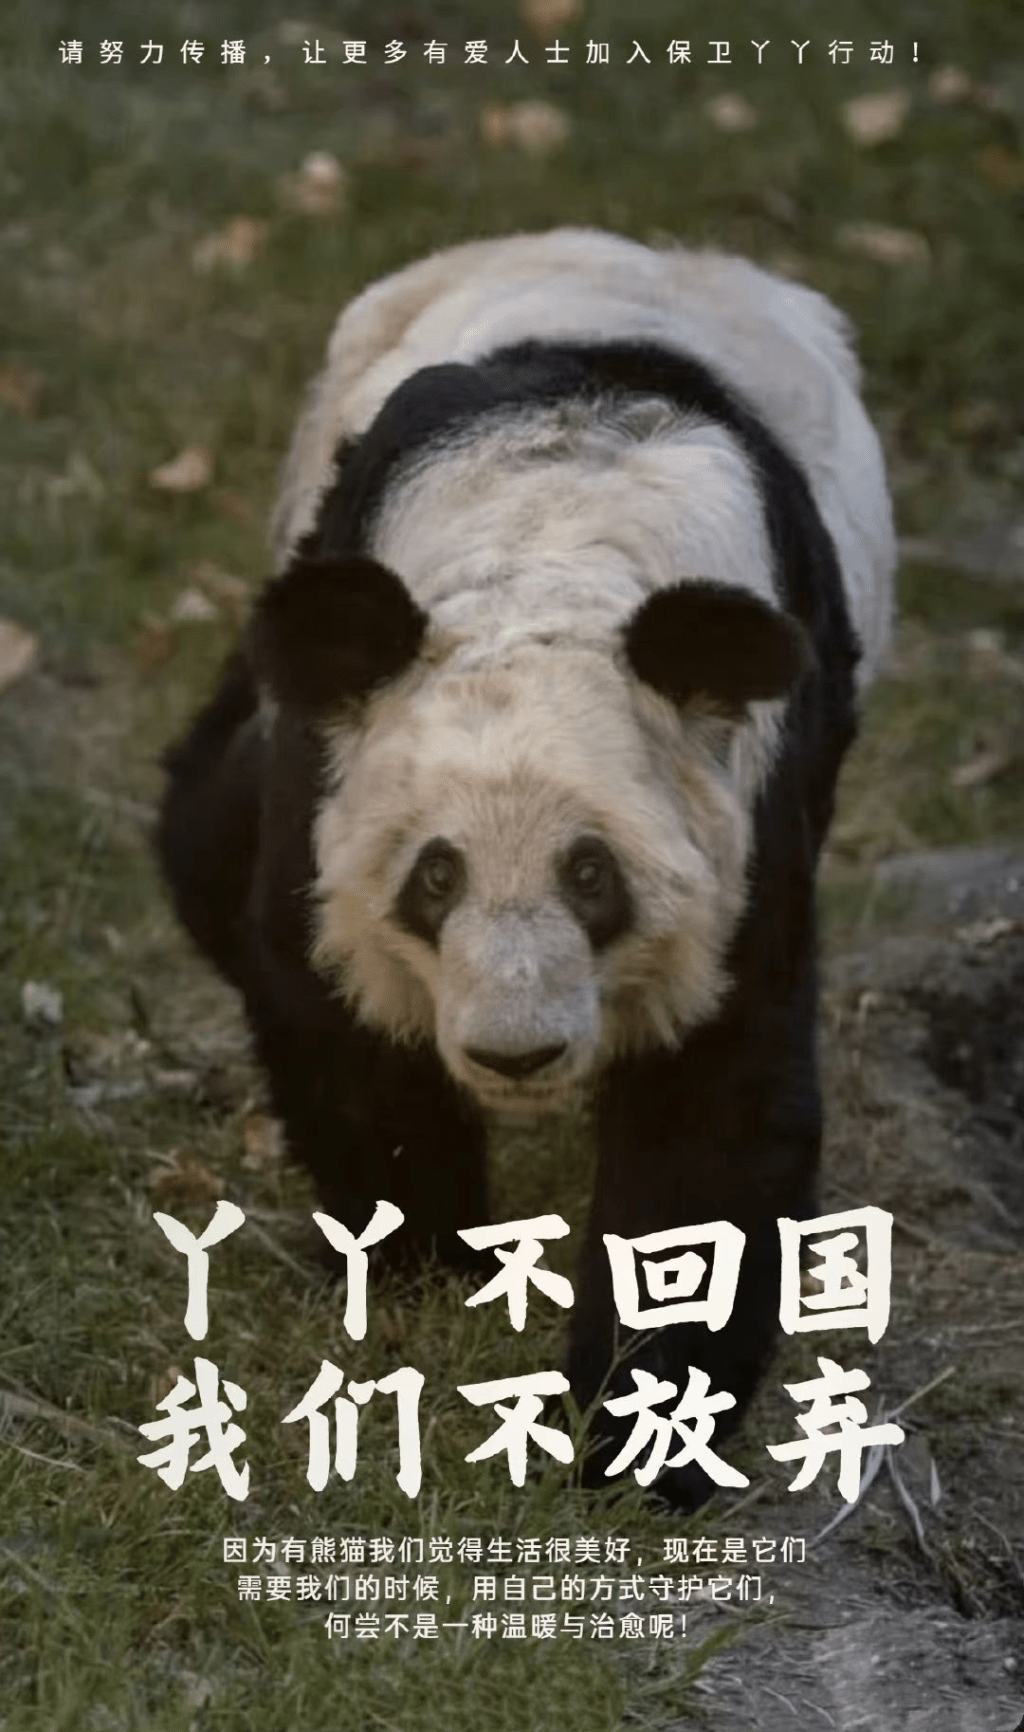 有网民发起呼吁尽早接大熊猫丫丫回国的活动。